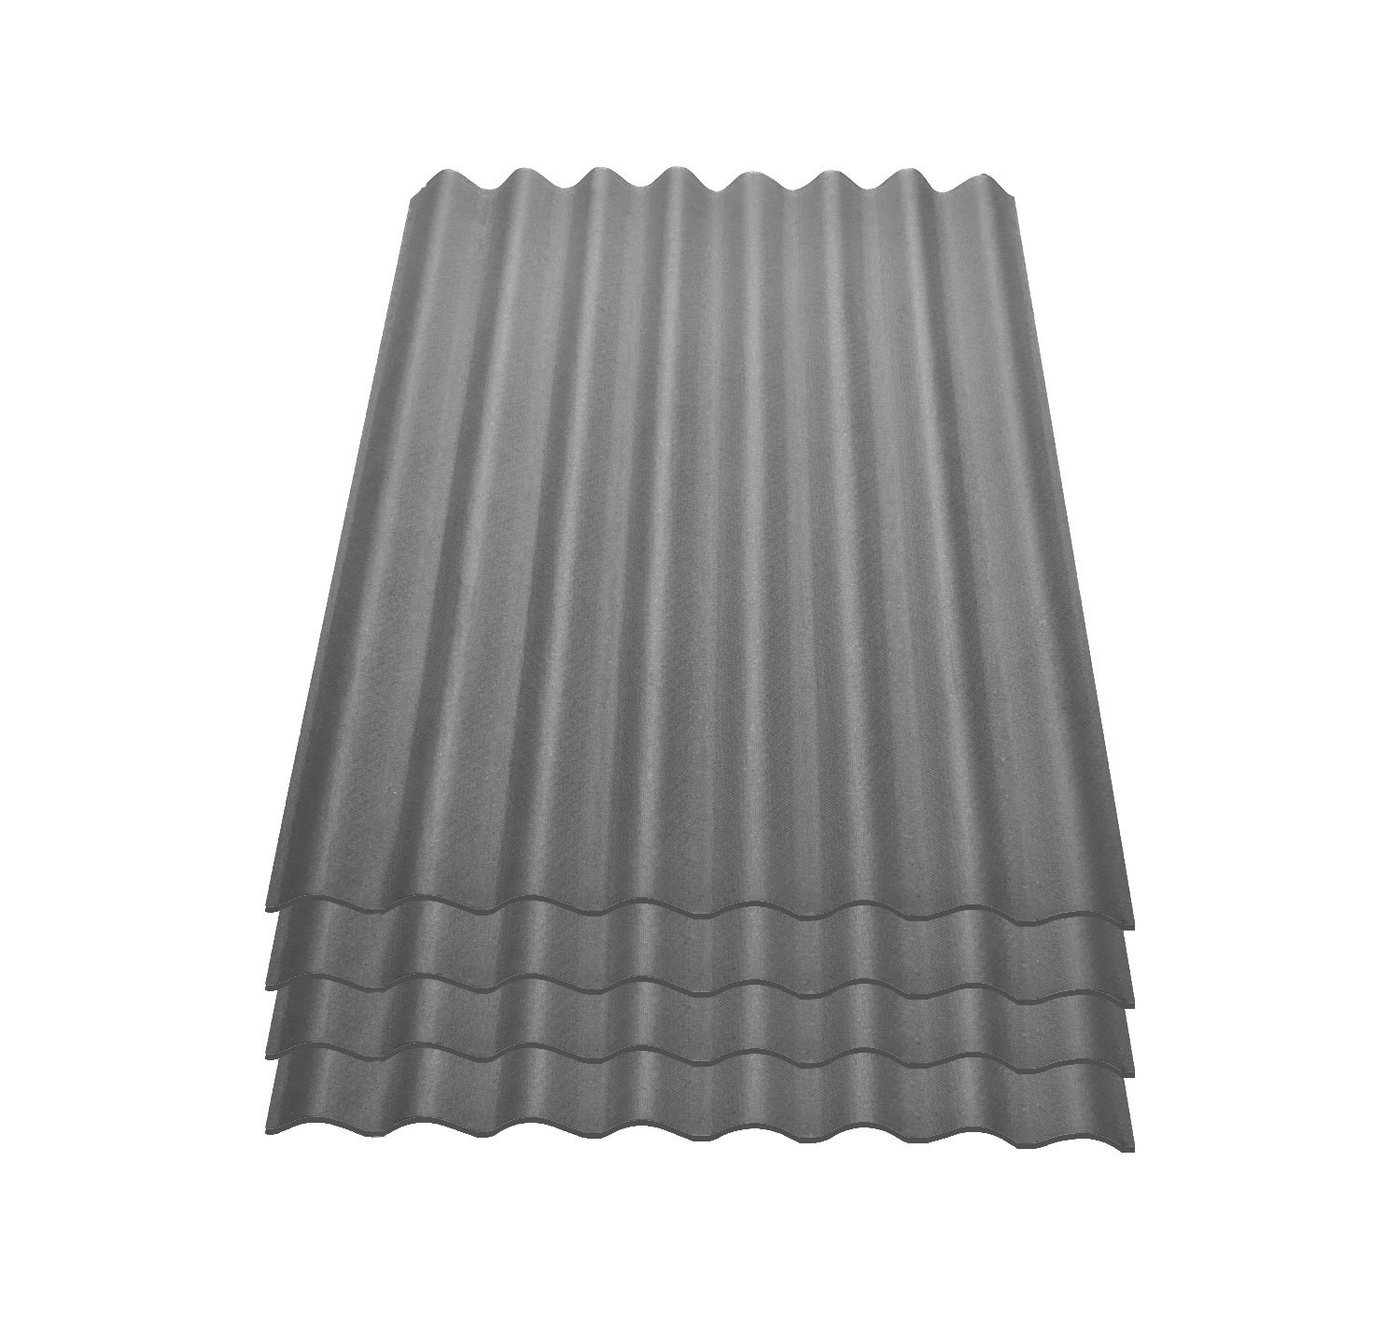 Onduline Dachpappe Onduline Easyline Dachplatte Wandplatte Bitumenwellplatten Wellplatte 4x0,76m² - grau, wellig, 3.04 m² pro Paket, (4-St) von Onduline